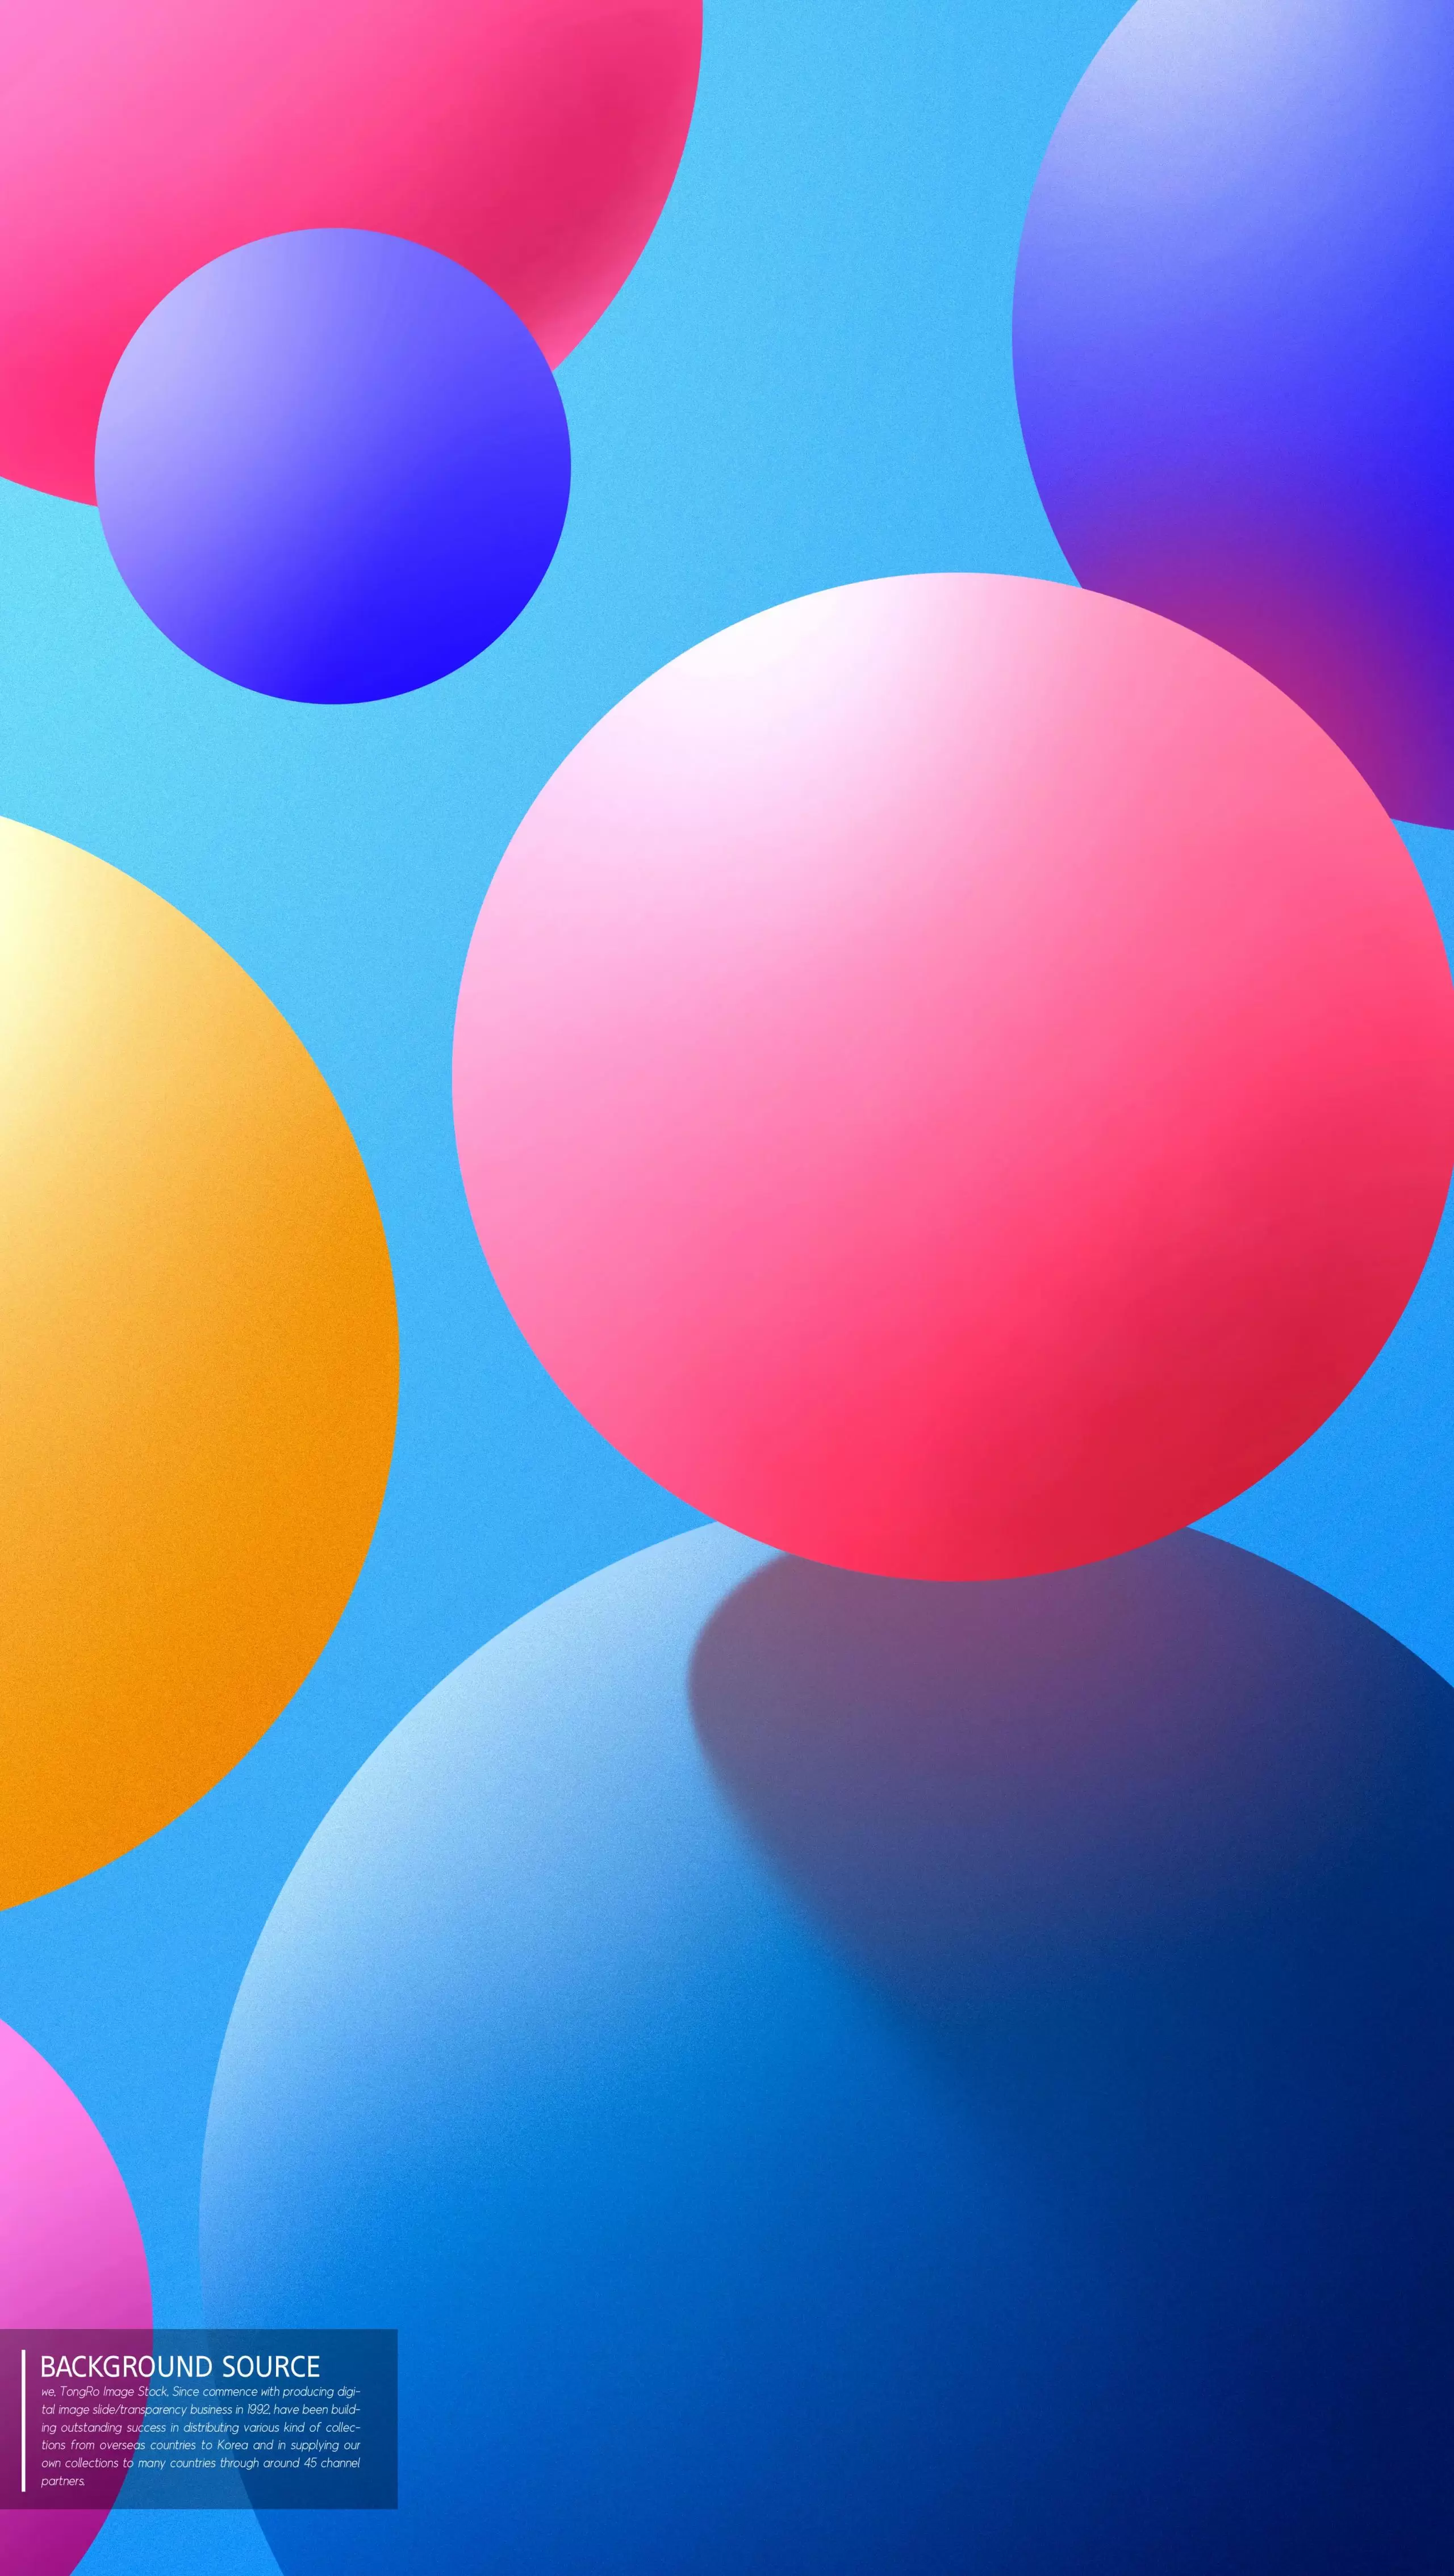 多彩球体抽象背景图形设计psd素材插图